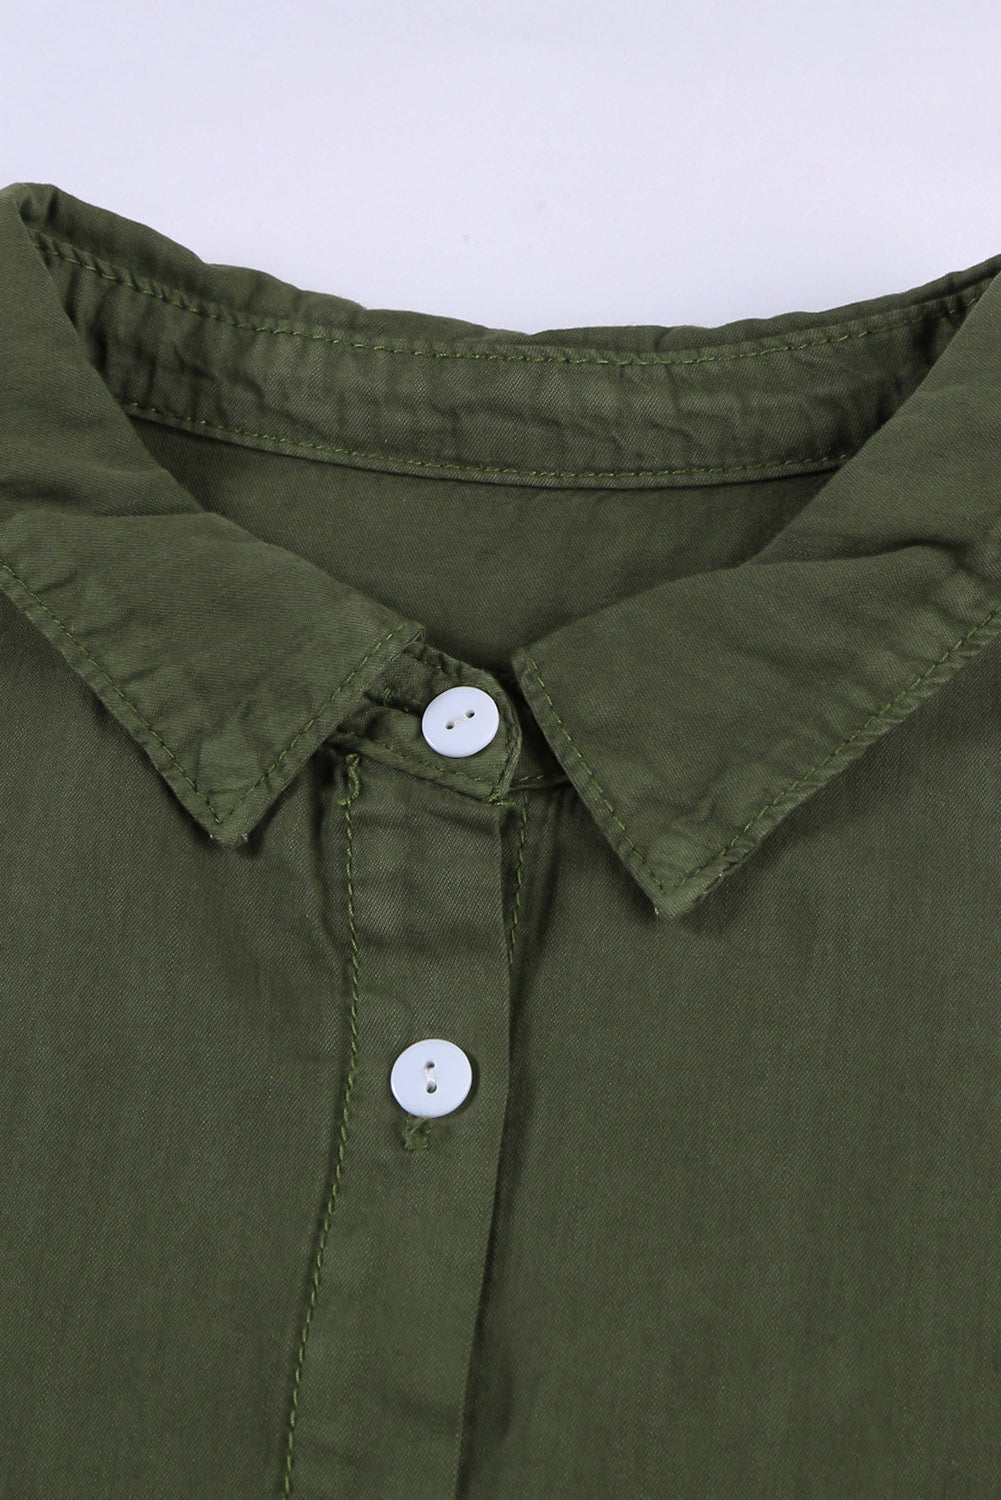 Pocketed Button Up Short Sleeve Denim Shirt Shirt